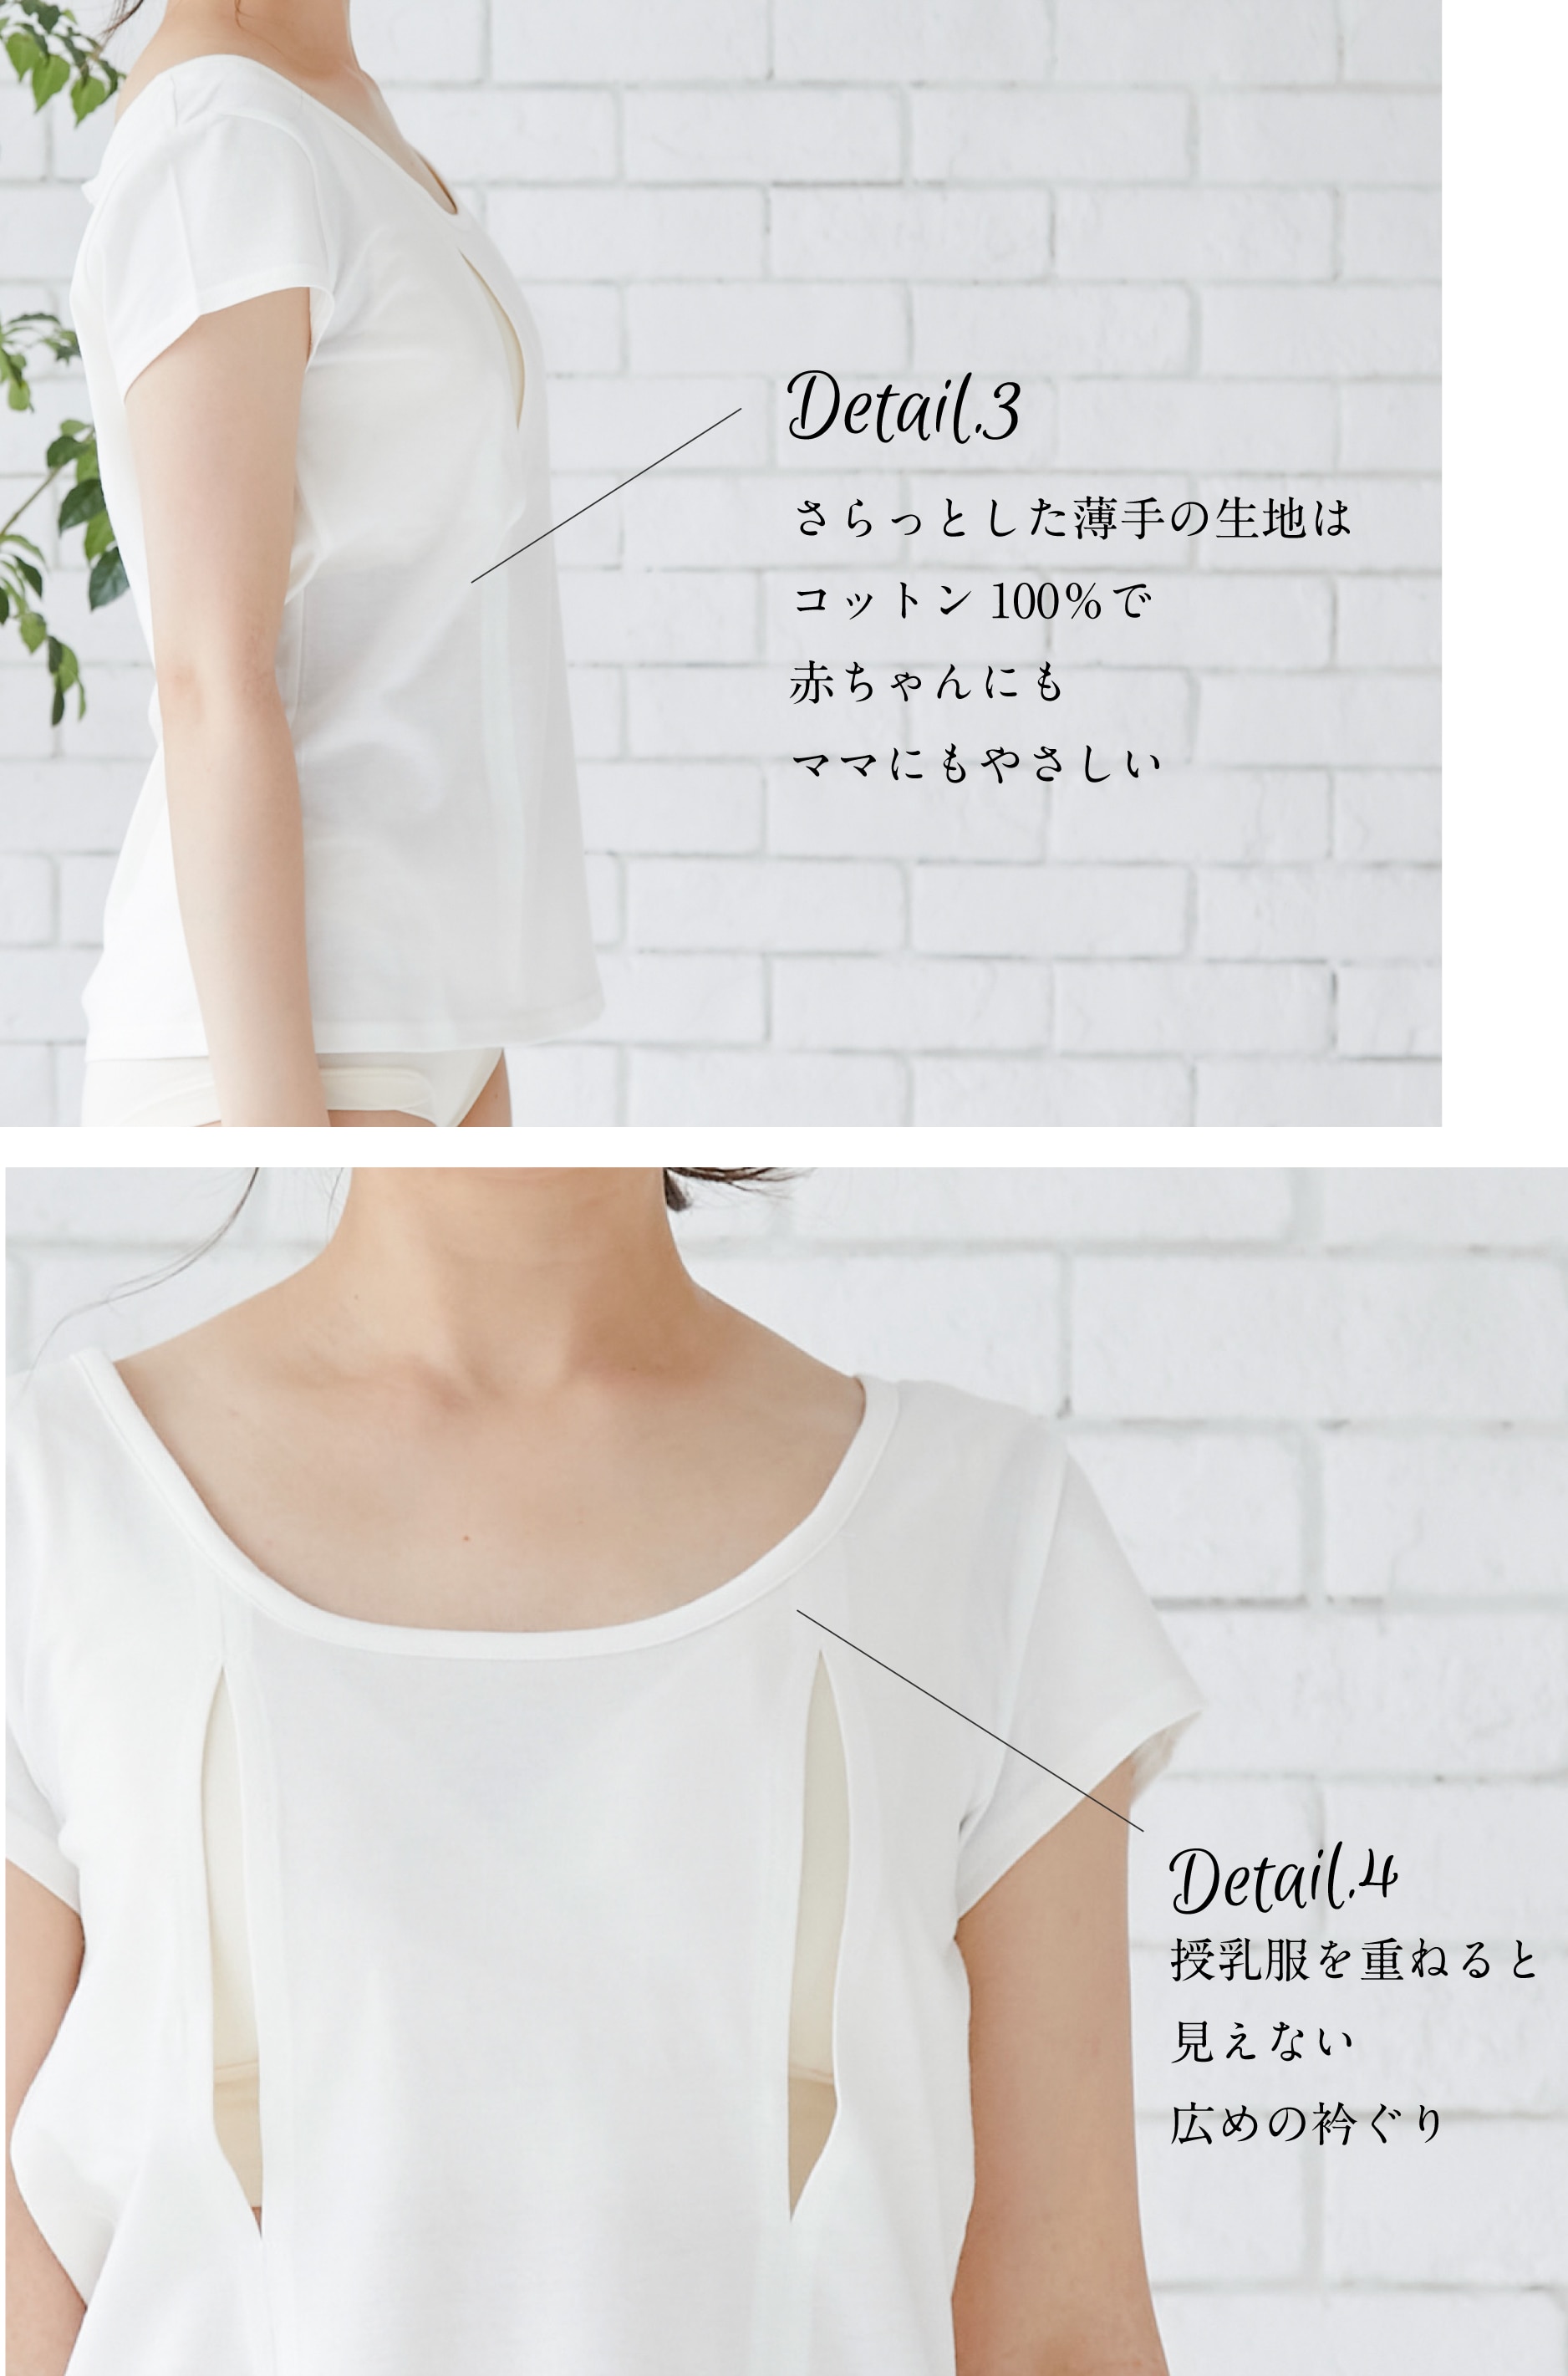 コットン100穴あきシャツ(一分袖) 授乳用インナー 授乳服・マタニティウェアのモーハウス｜25年間ママに愛され続ける日本製授乳服